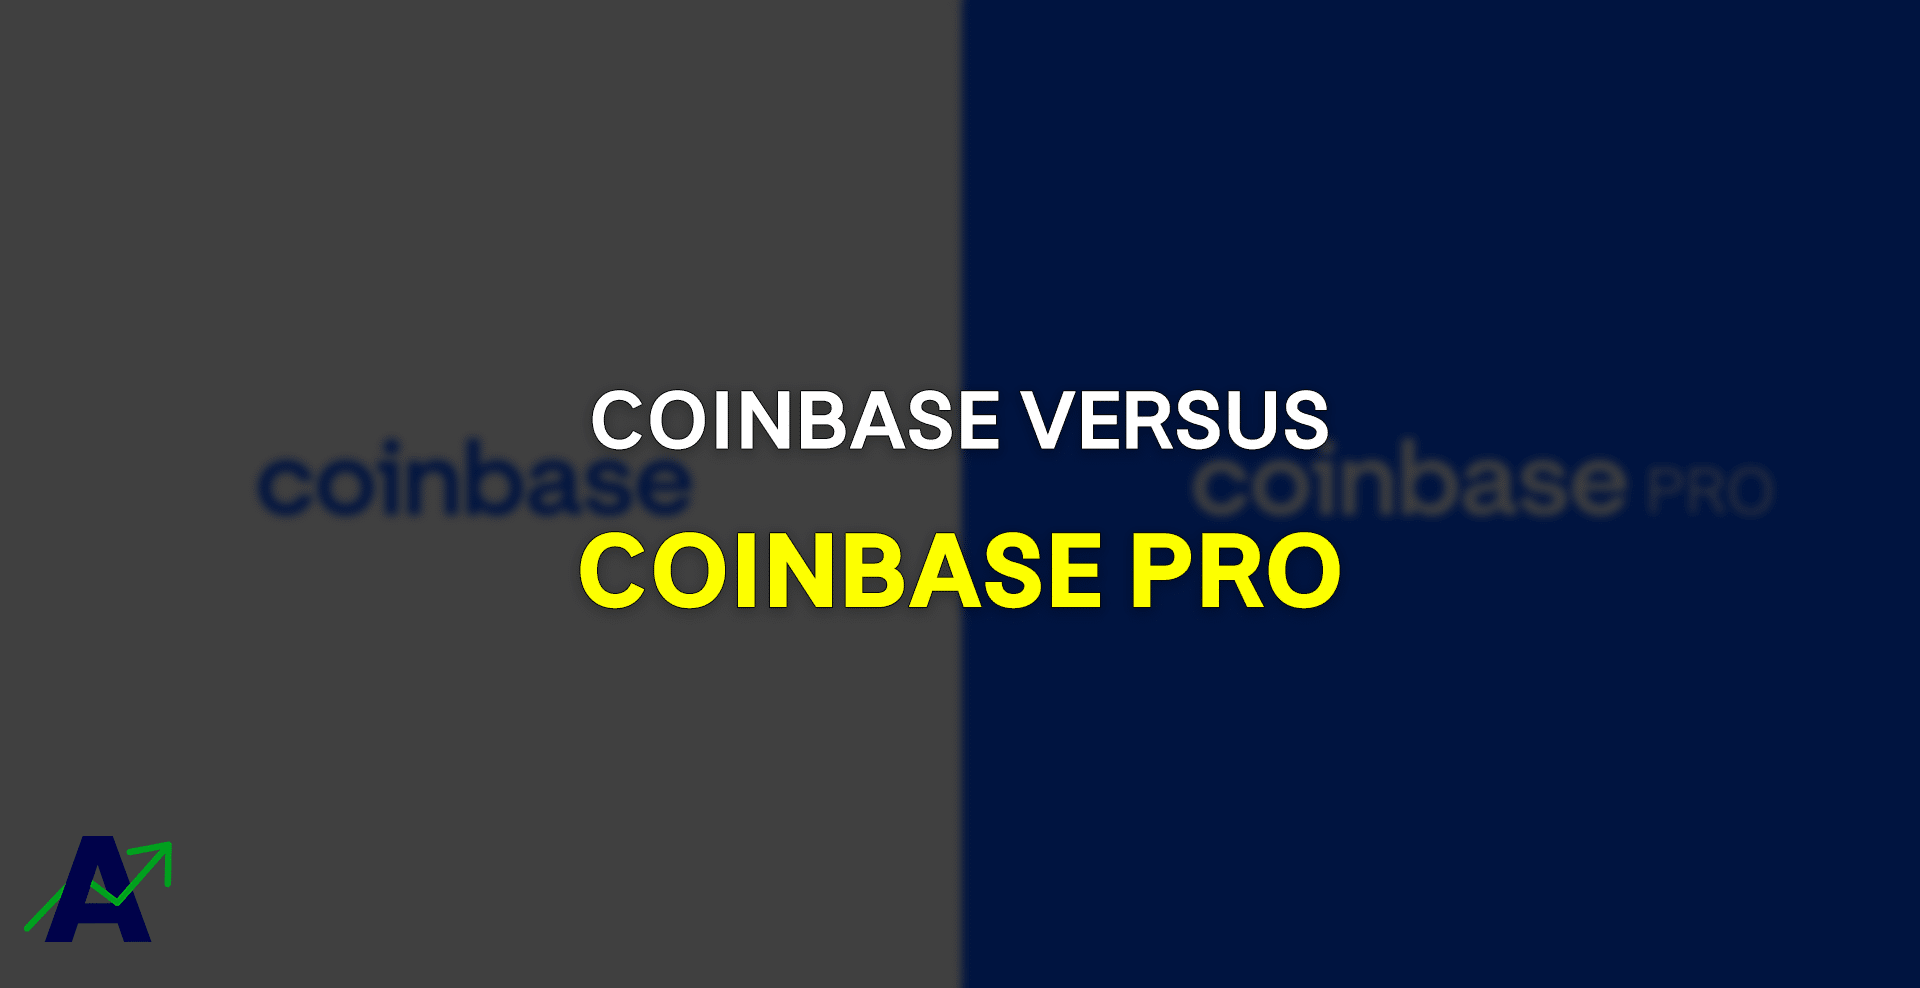 Coinbase versus Coinbase Pro